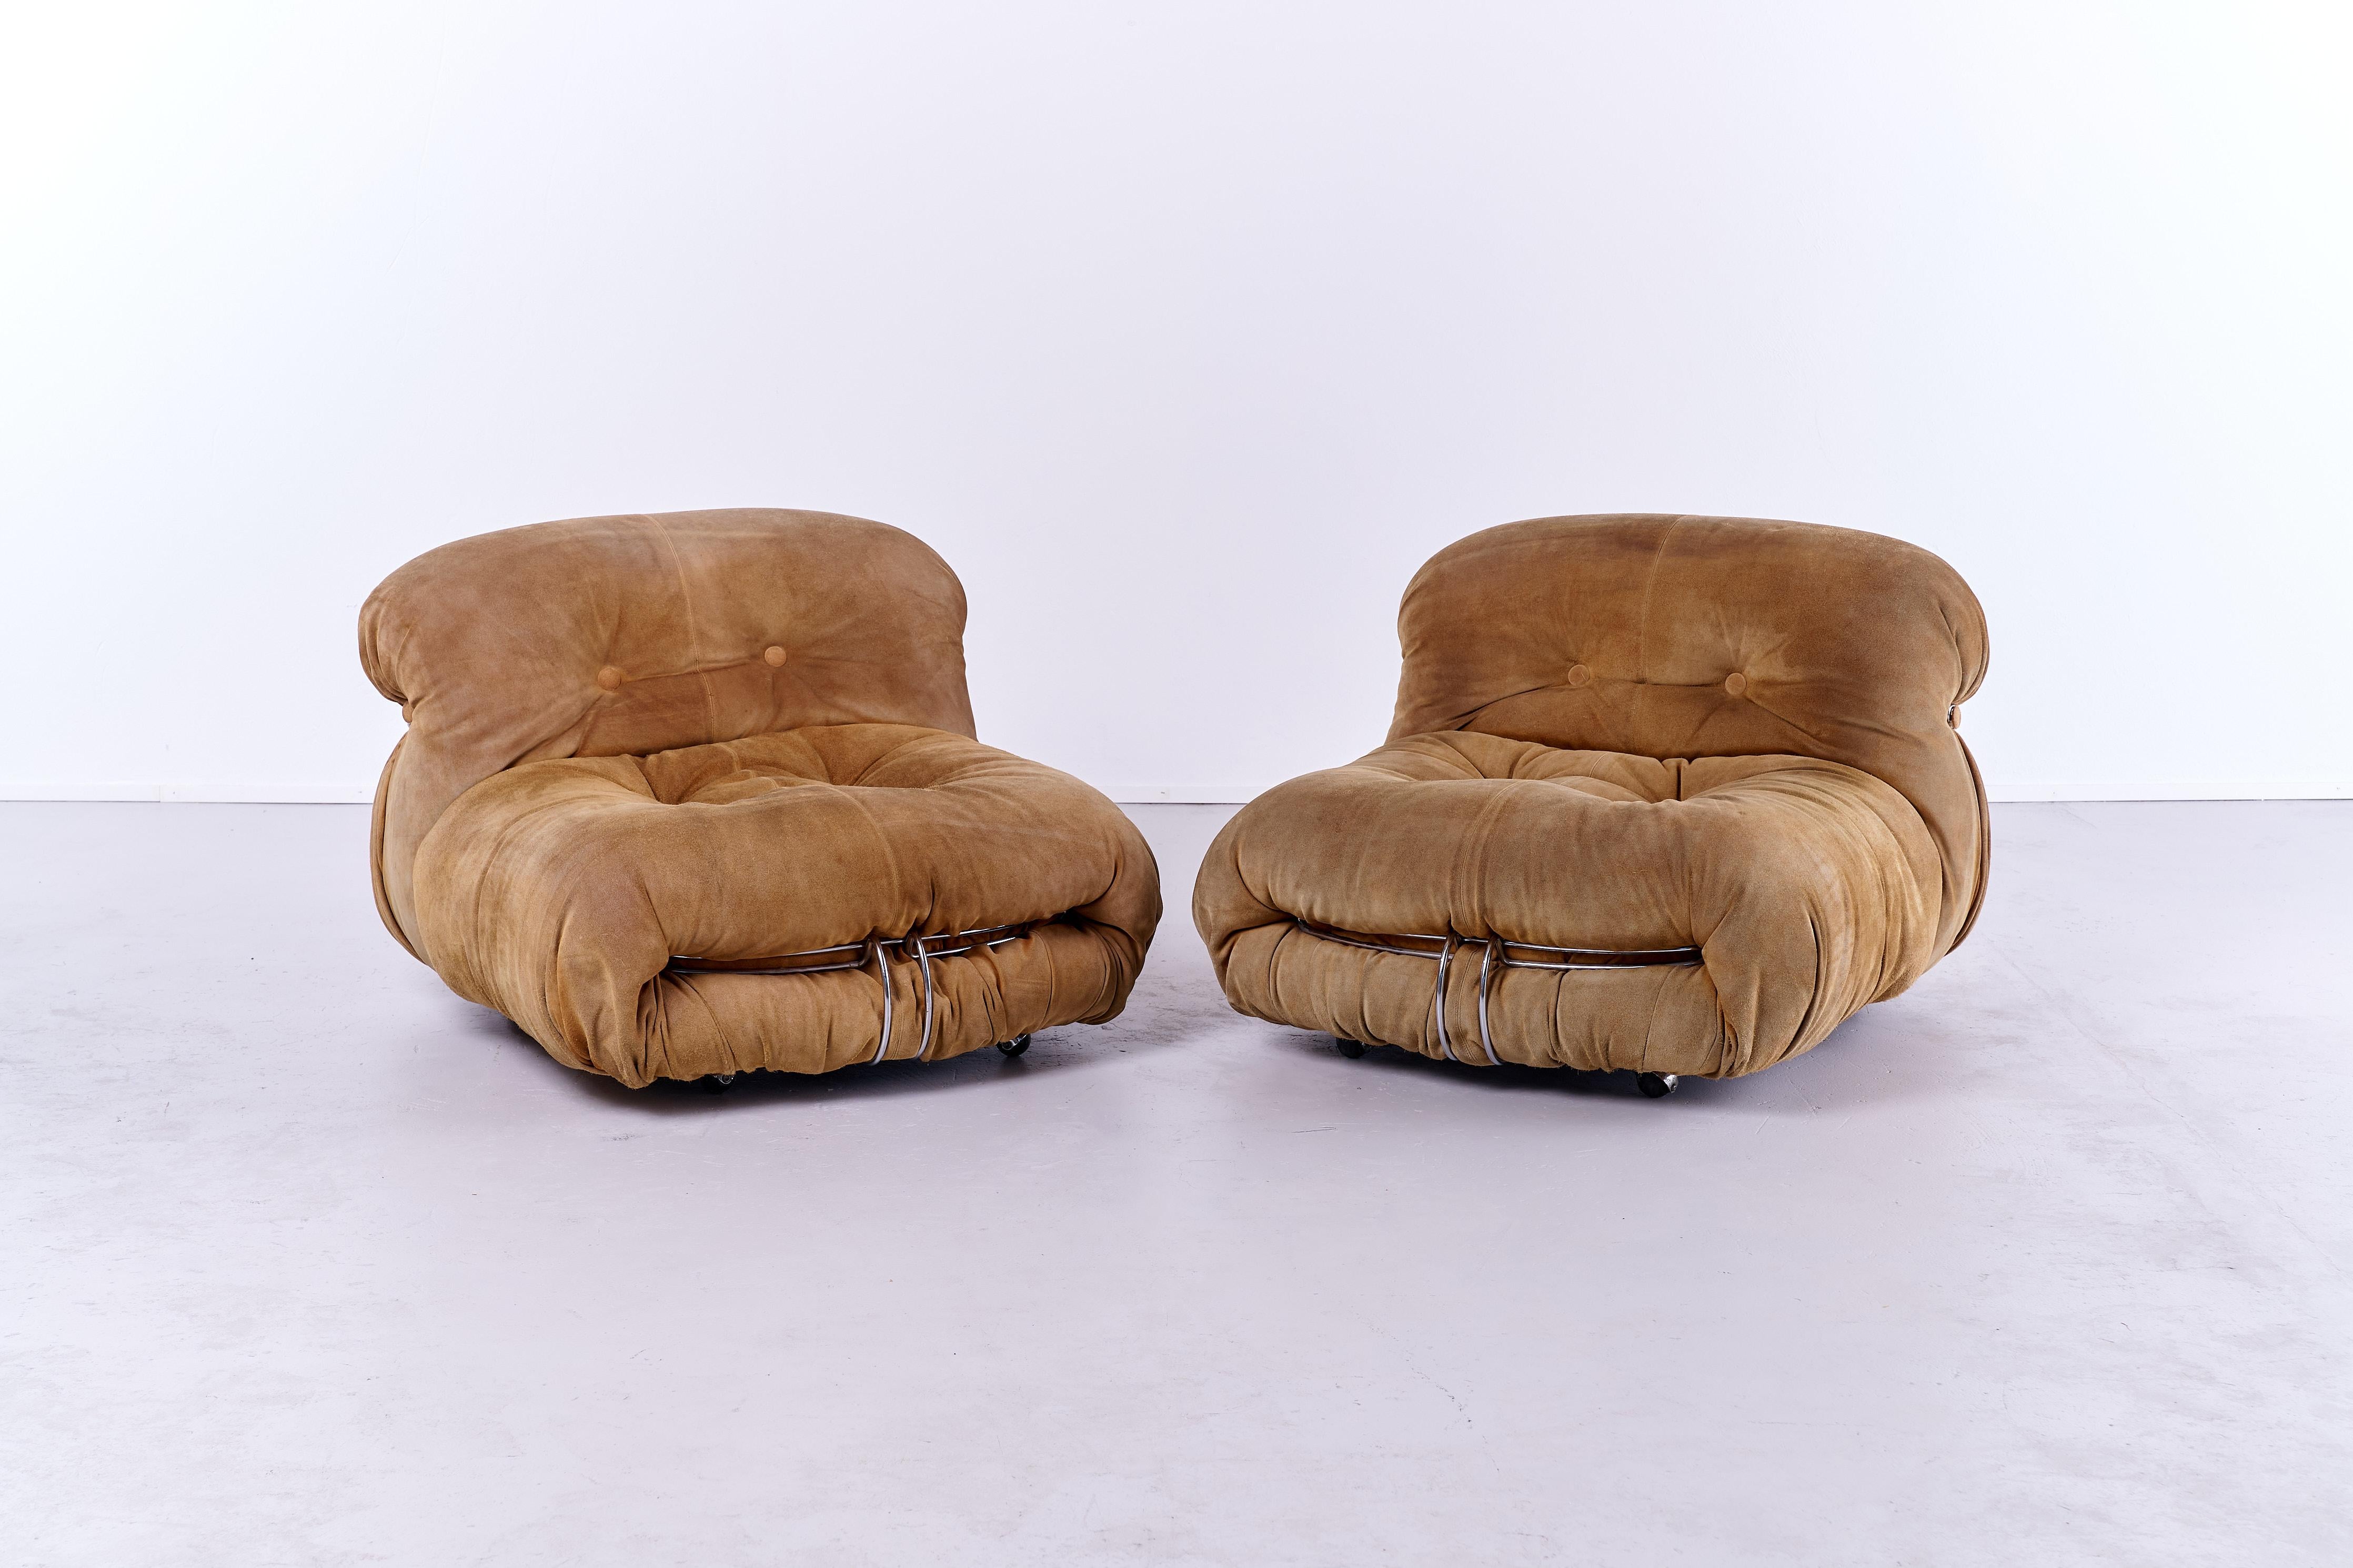 Der Soriana Lounge Chair, eine zeitlose Kreation der italienischen Designer Afra und Tobia Scarpa aus dem Jahr 1969, ist ein Meisterwerk des Möbeldesigns. Zu seinen charakteristischen Merkmalen gehören weiche, einladende Rundungen, ein